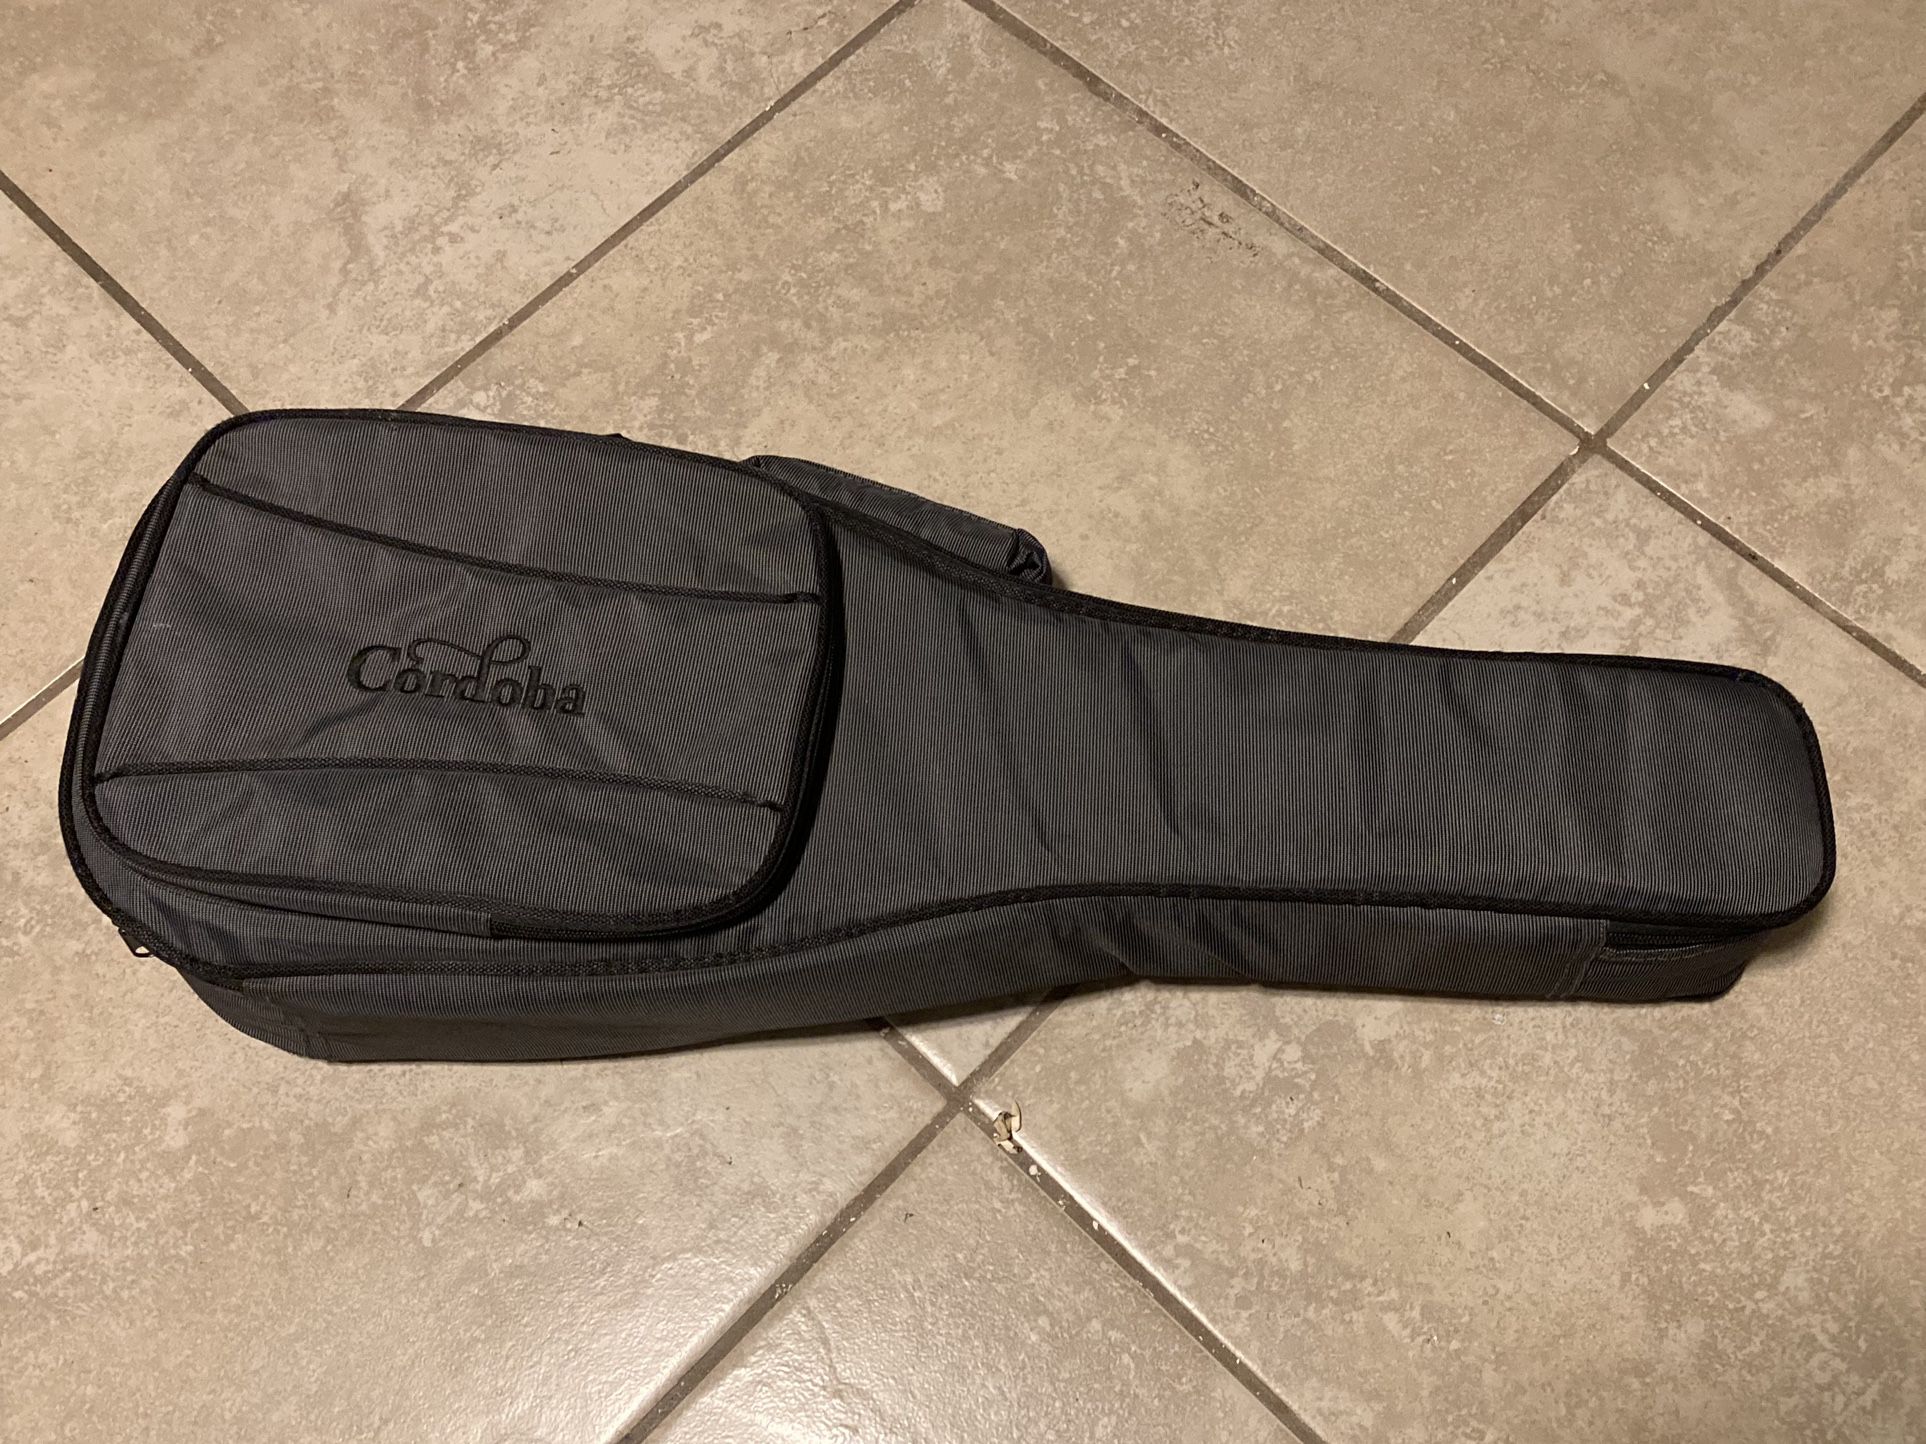 Reduced: Cordoba Violin Ukulele Instrument Case 